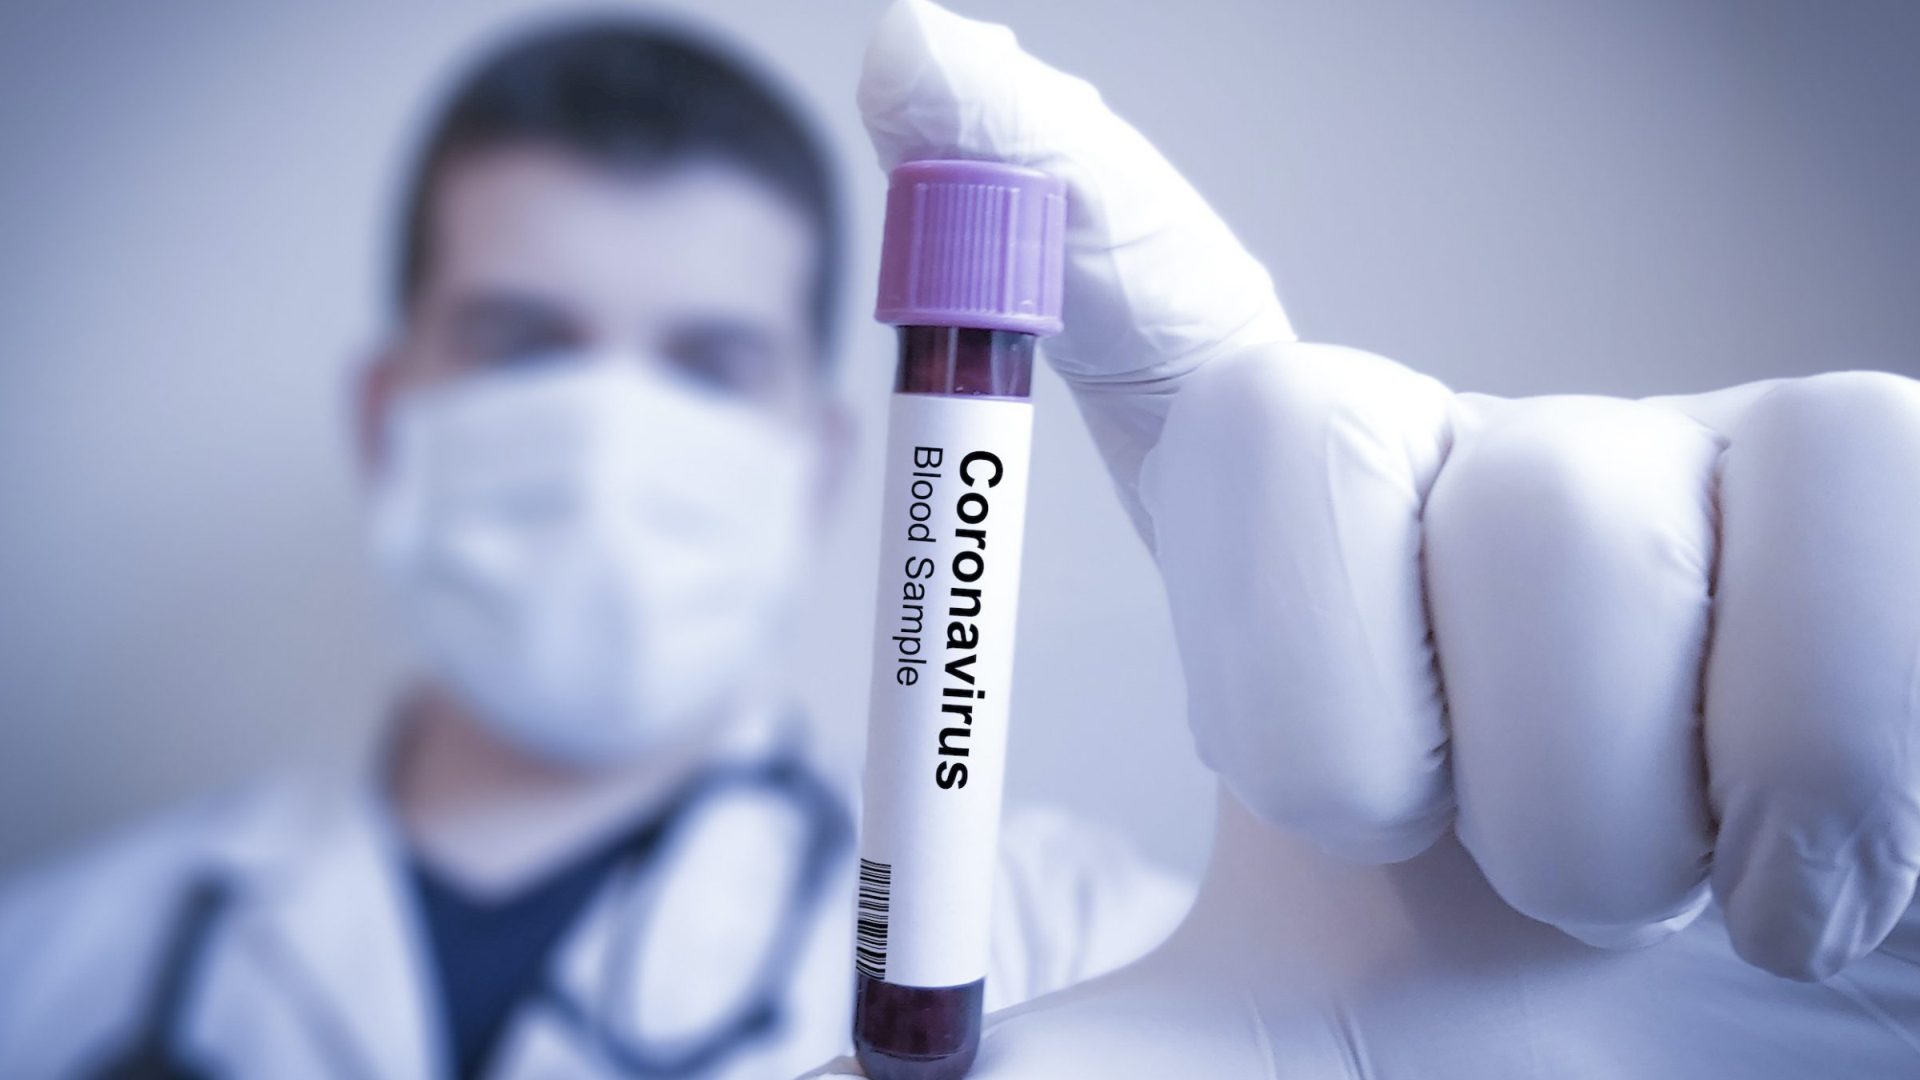 Diabetics Have Higher Risk For Coronavirus